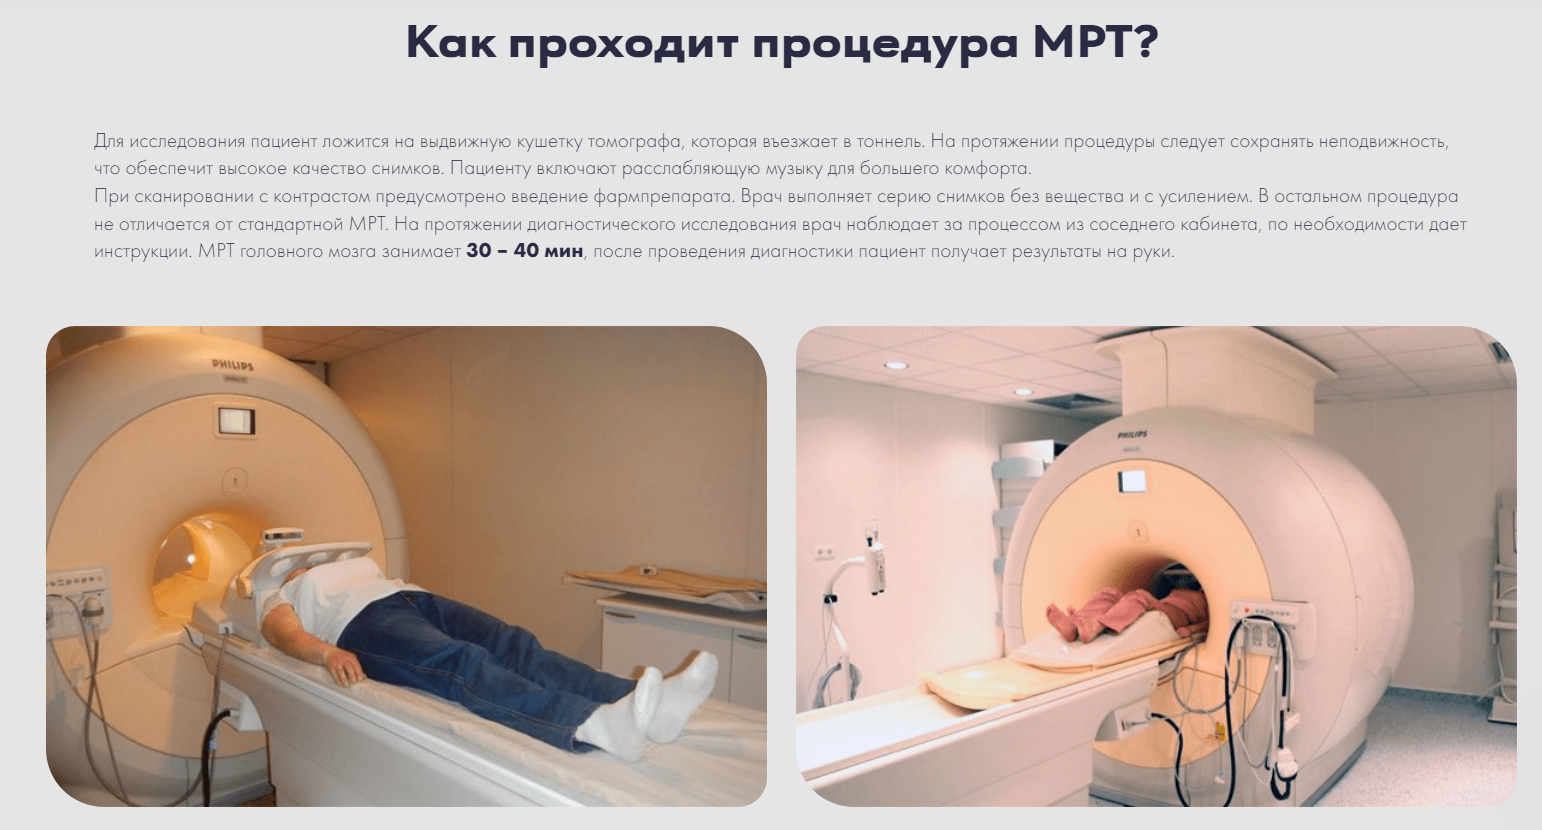 Как проходит процедура МРТ?